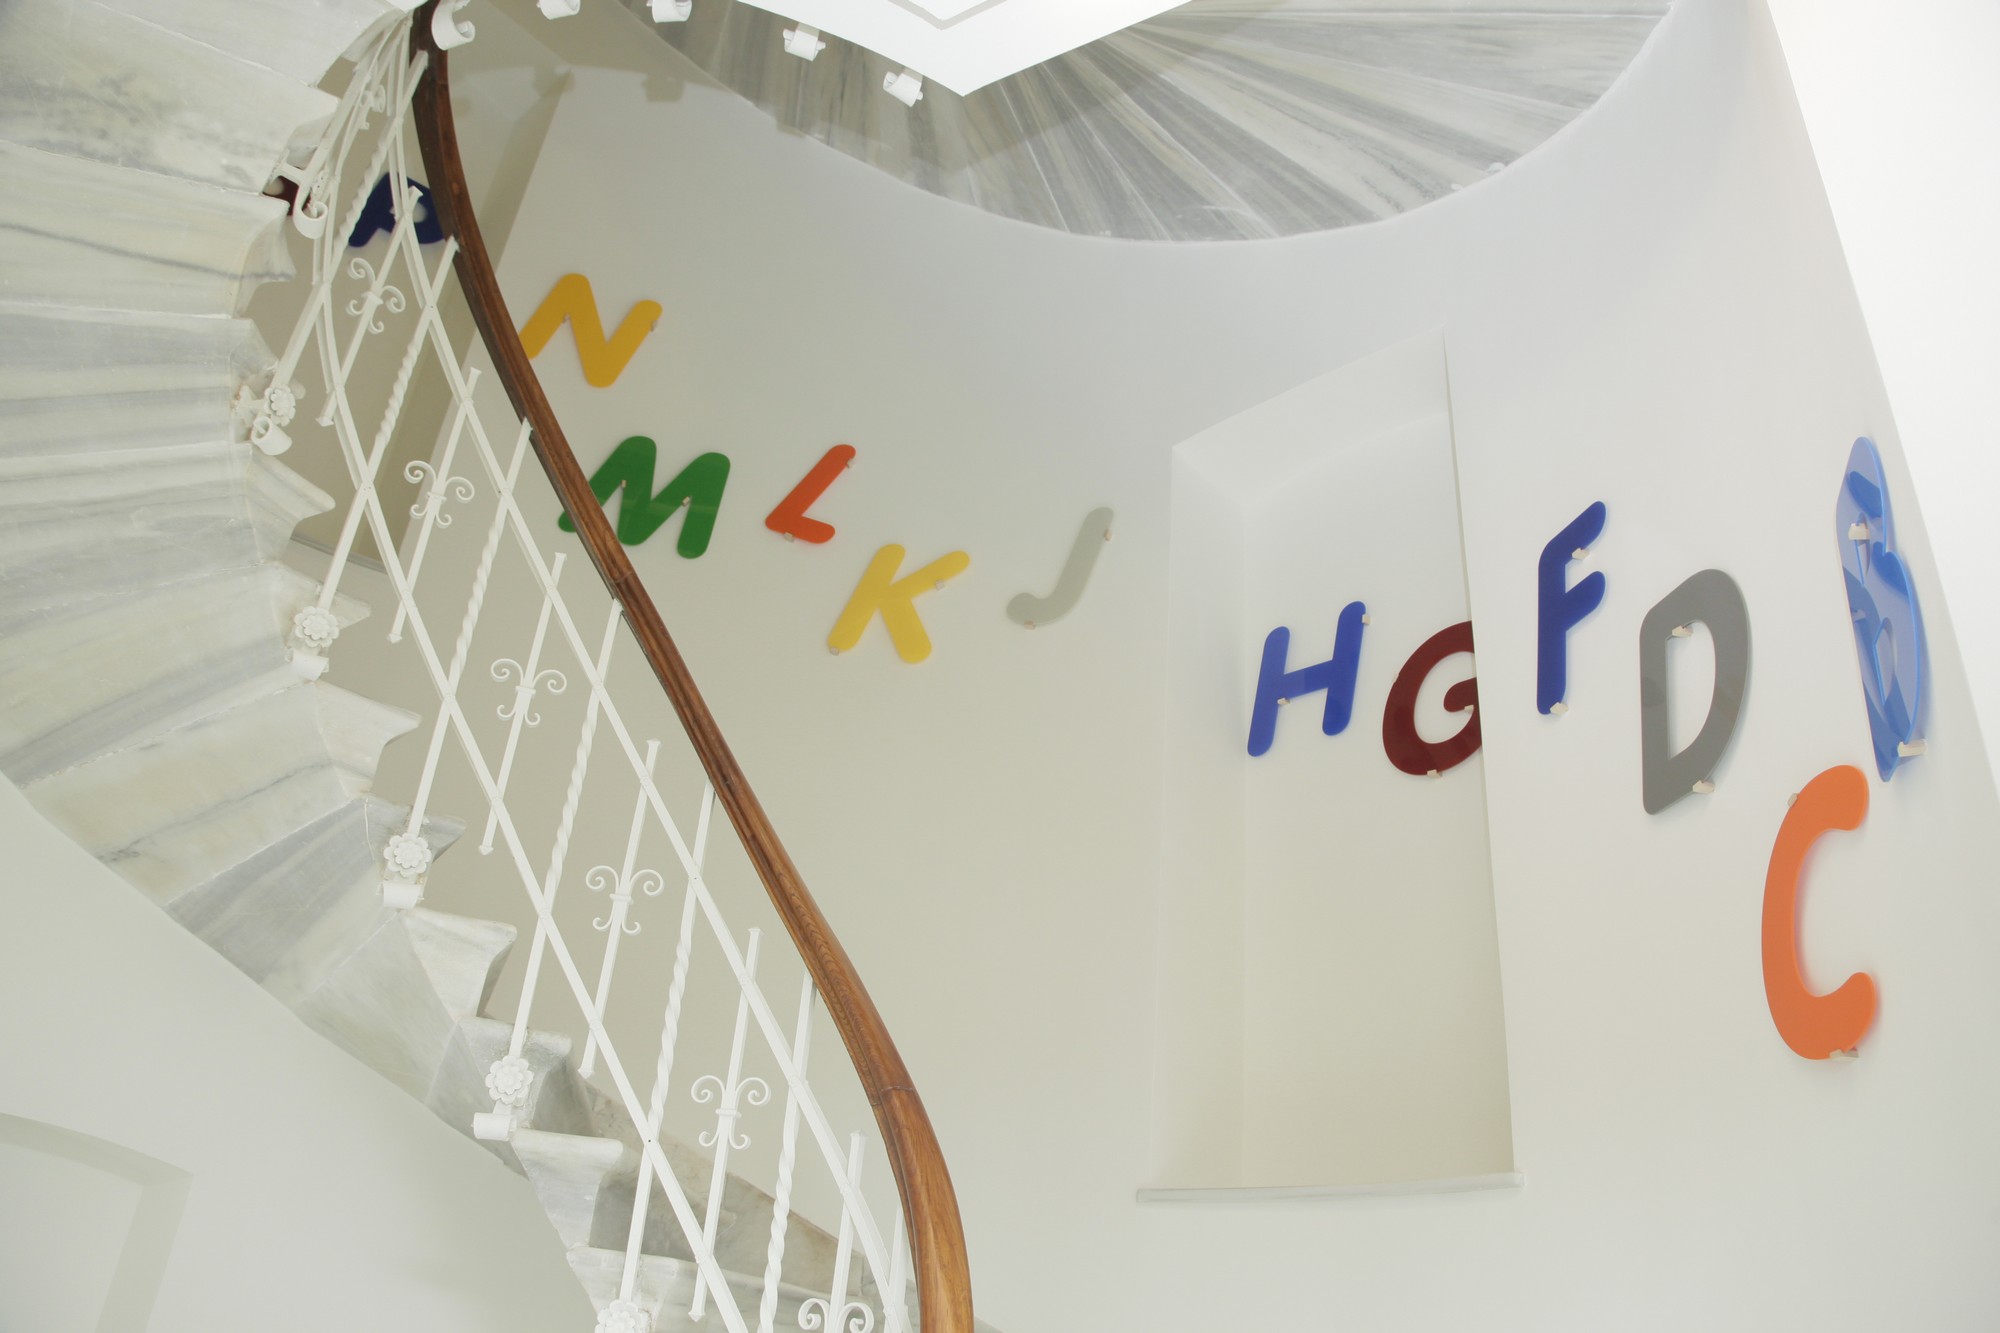 Ayşe Erkmen, „Colors of Letters”, 2007, pleksiglas, dzięki uprzejmości artystki i Galerie Barbara Weiss (źródło: materiały prasowe organizatora)